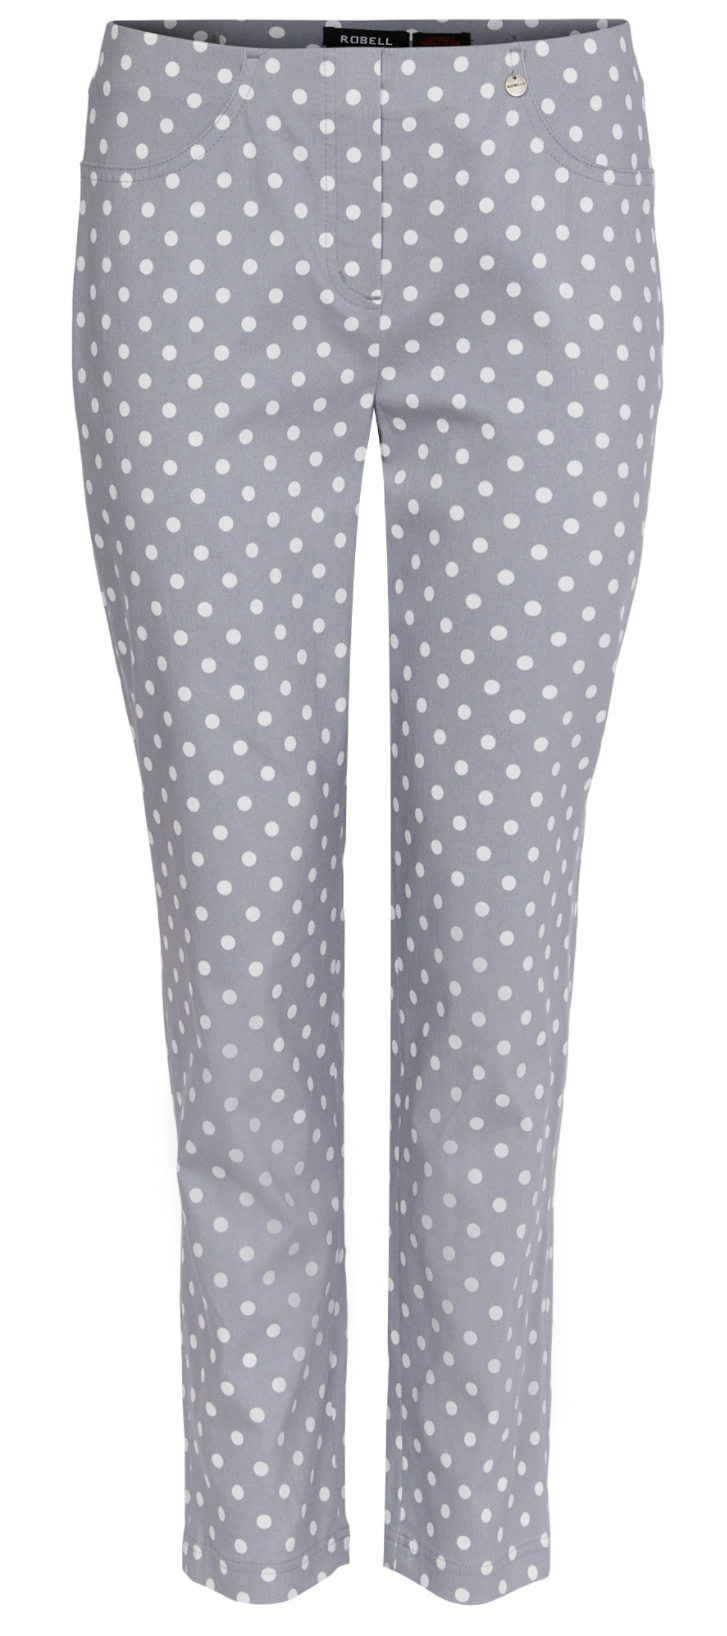 Women Trousers polka dot